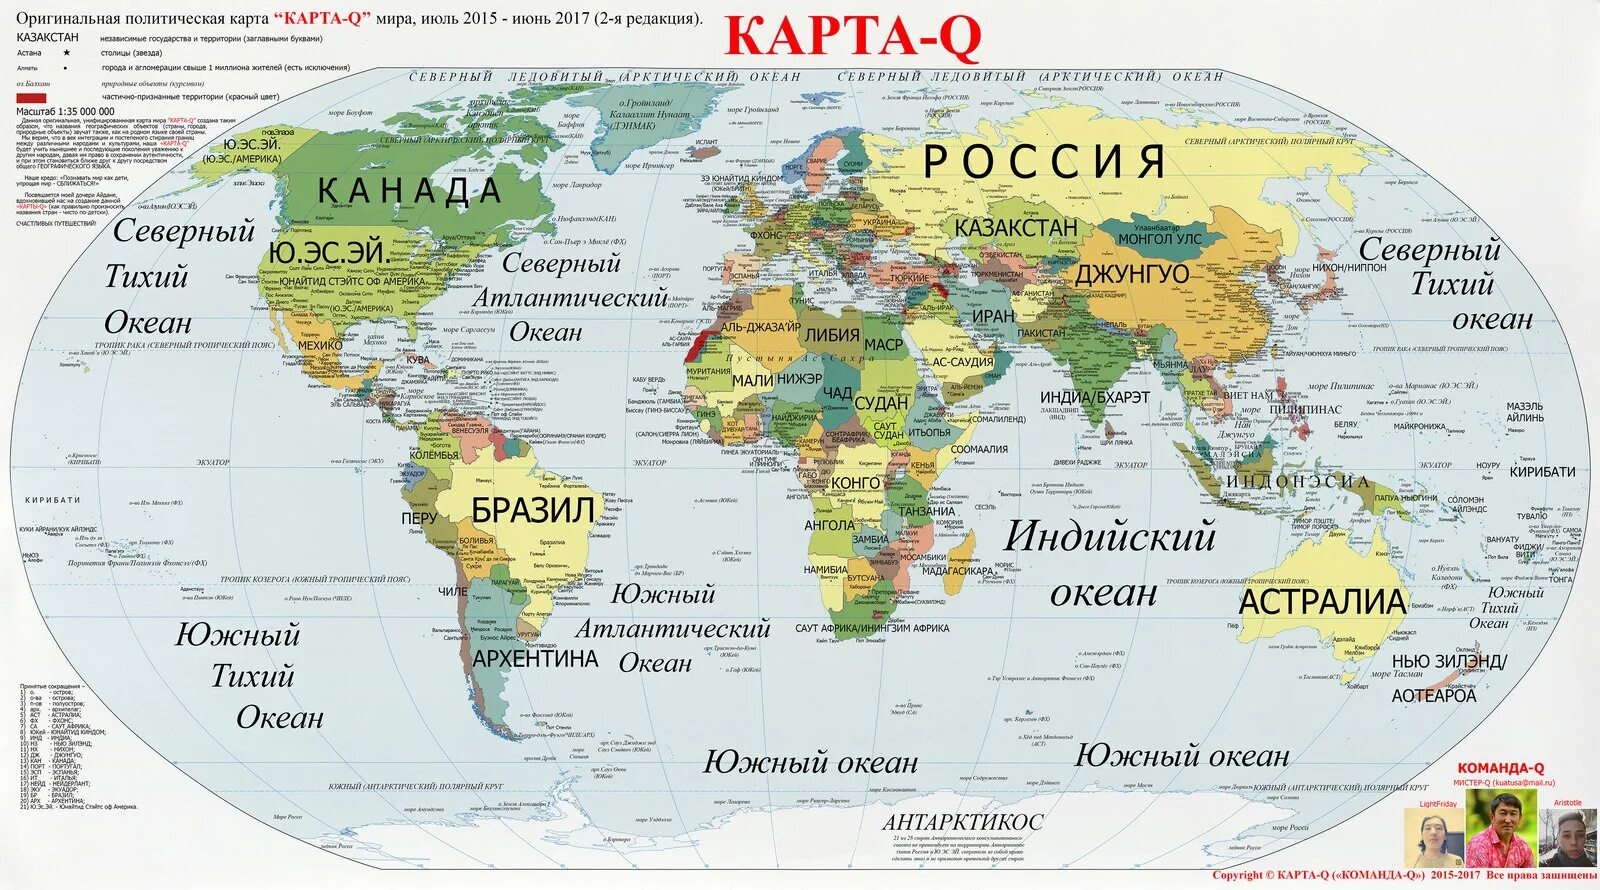 Карта с названием стран на русском